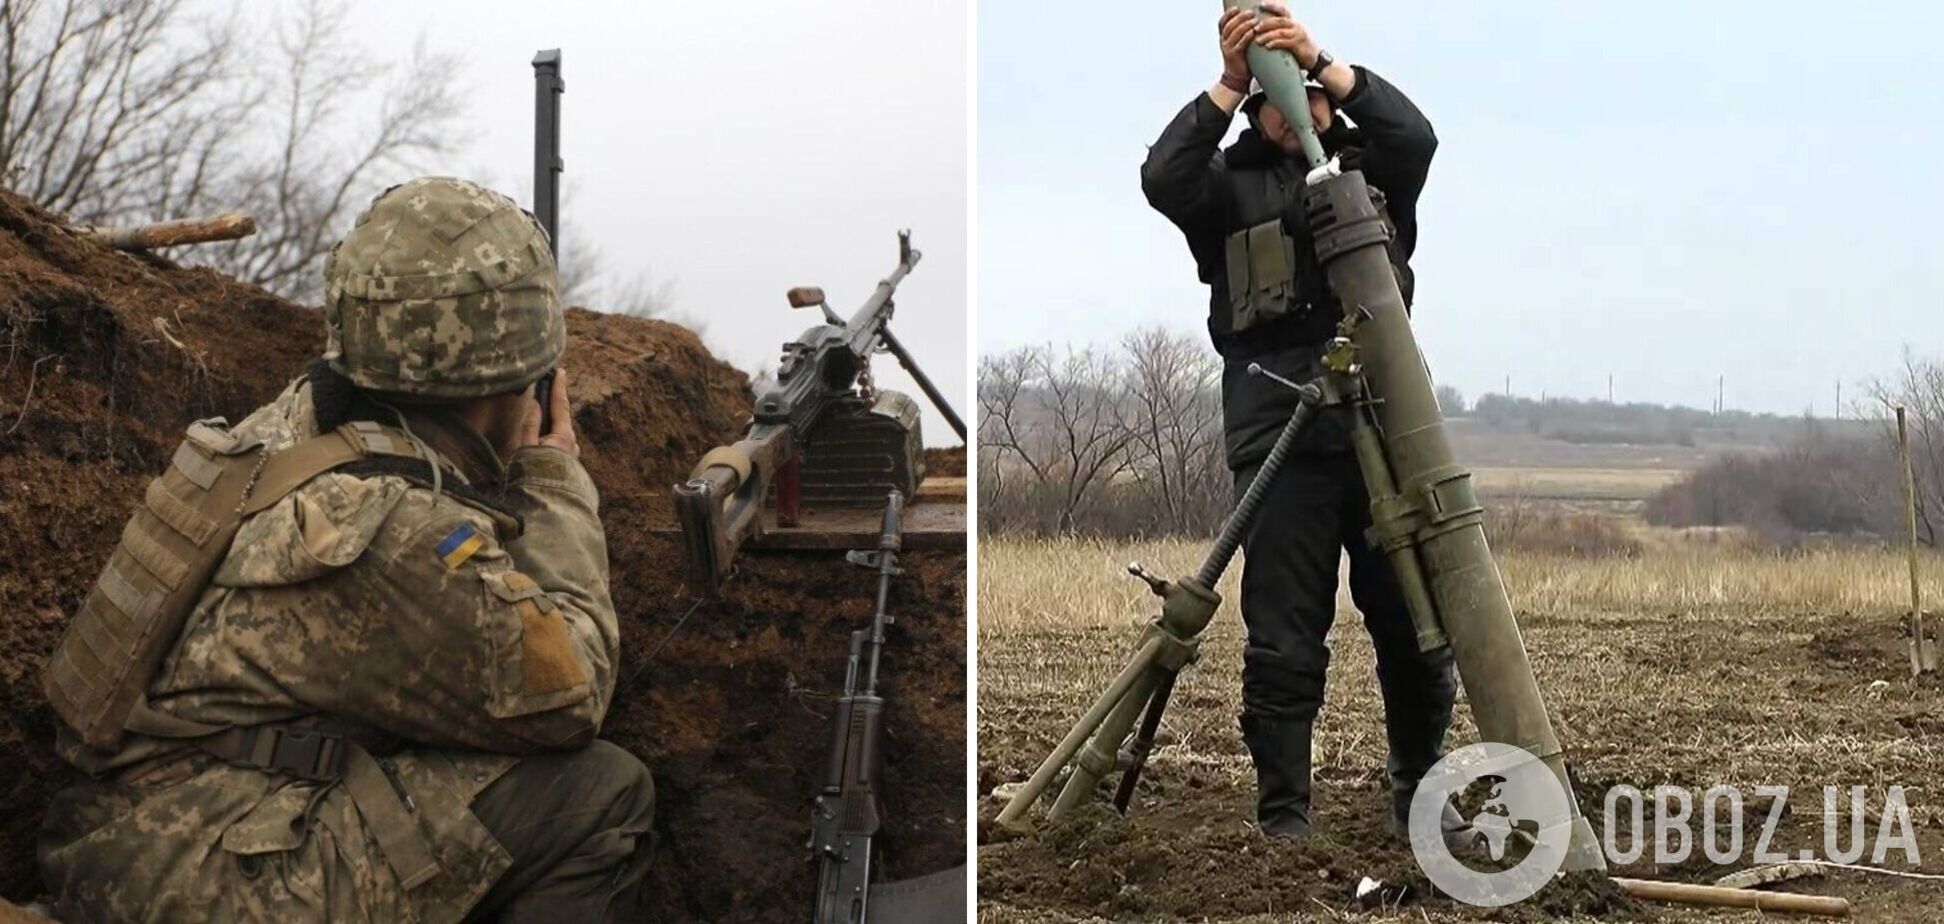 Оккупанты на Донбассе открыли огонь по ВСУ из артиллерии, ранен защитник Украины. Карта обстрелов